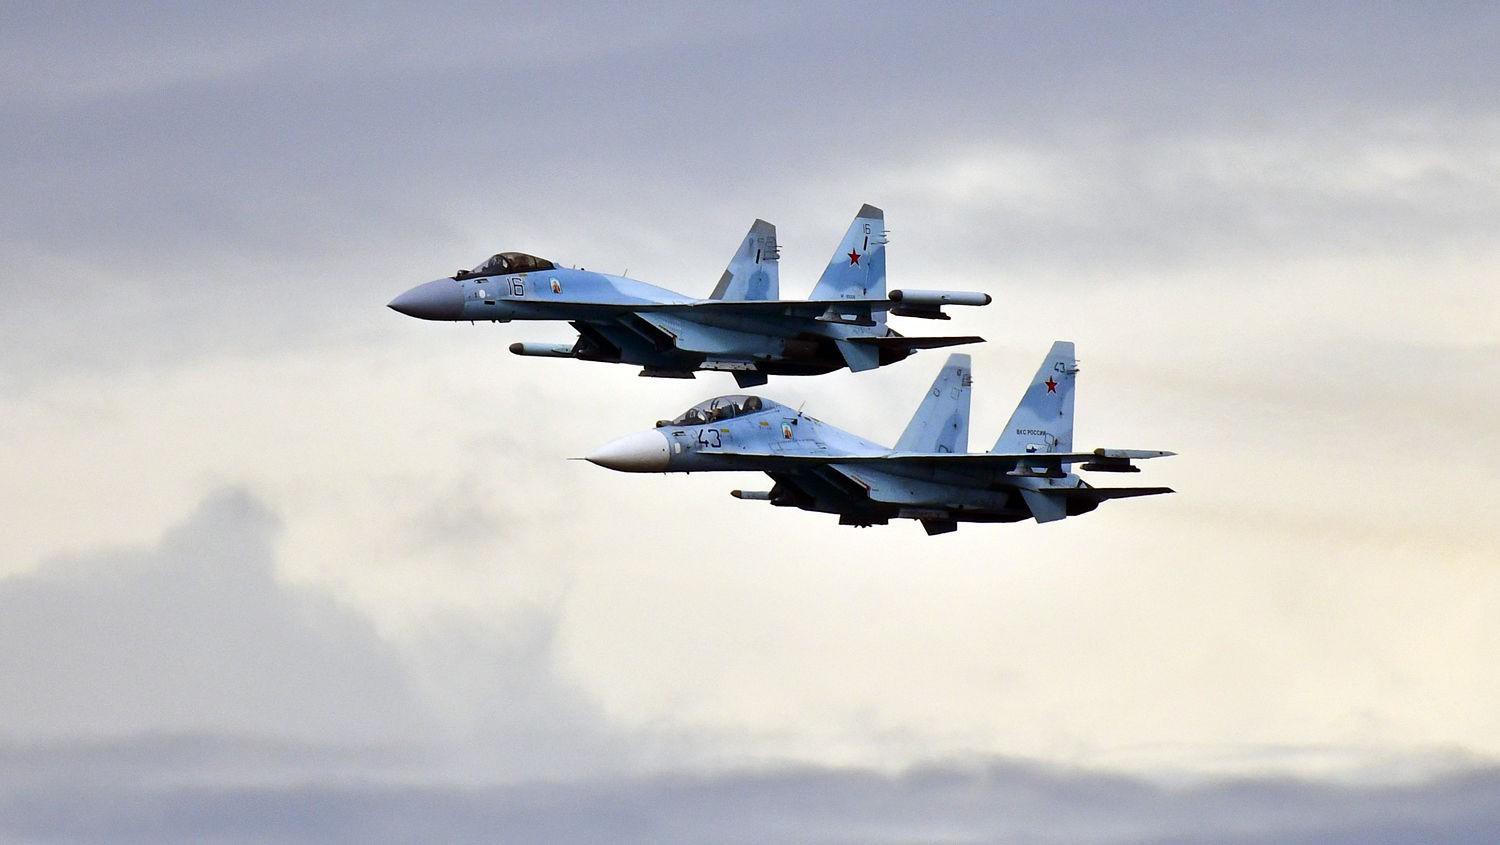 Điểm yếu chí tử khiến Su-35 Nga ngày càng thất thế trước F-35 Mỹ Ảnh 10